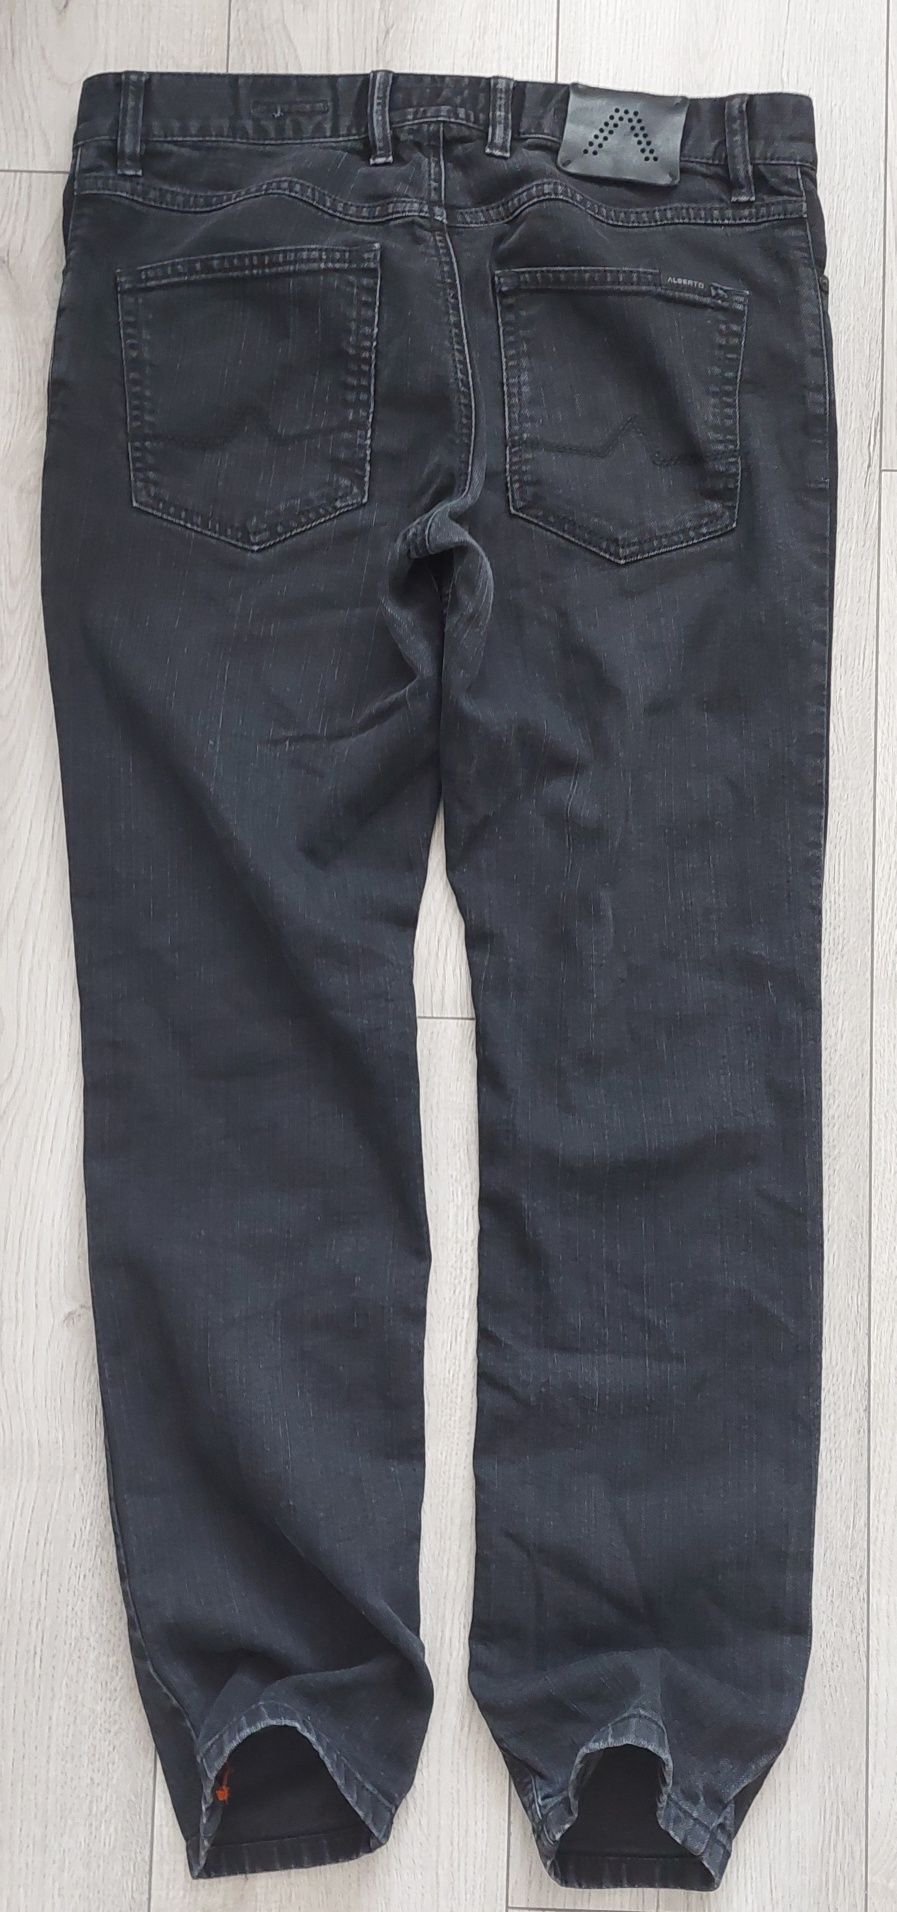 Spodnie Alberto Jeans Pipe T400 32x30 Regular SlimFit dżinsy biznesowe